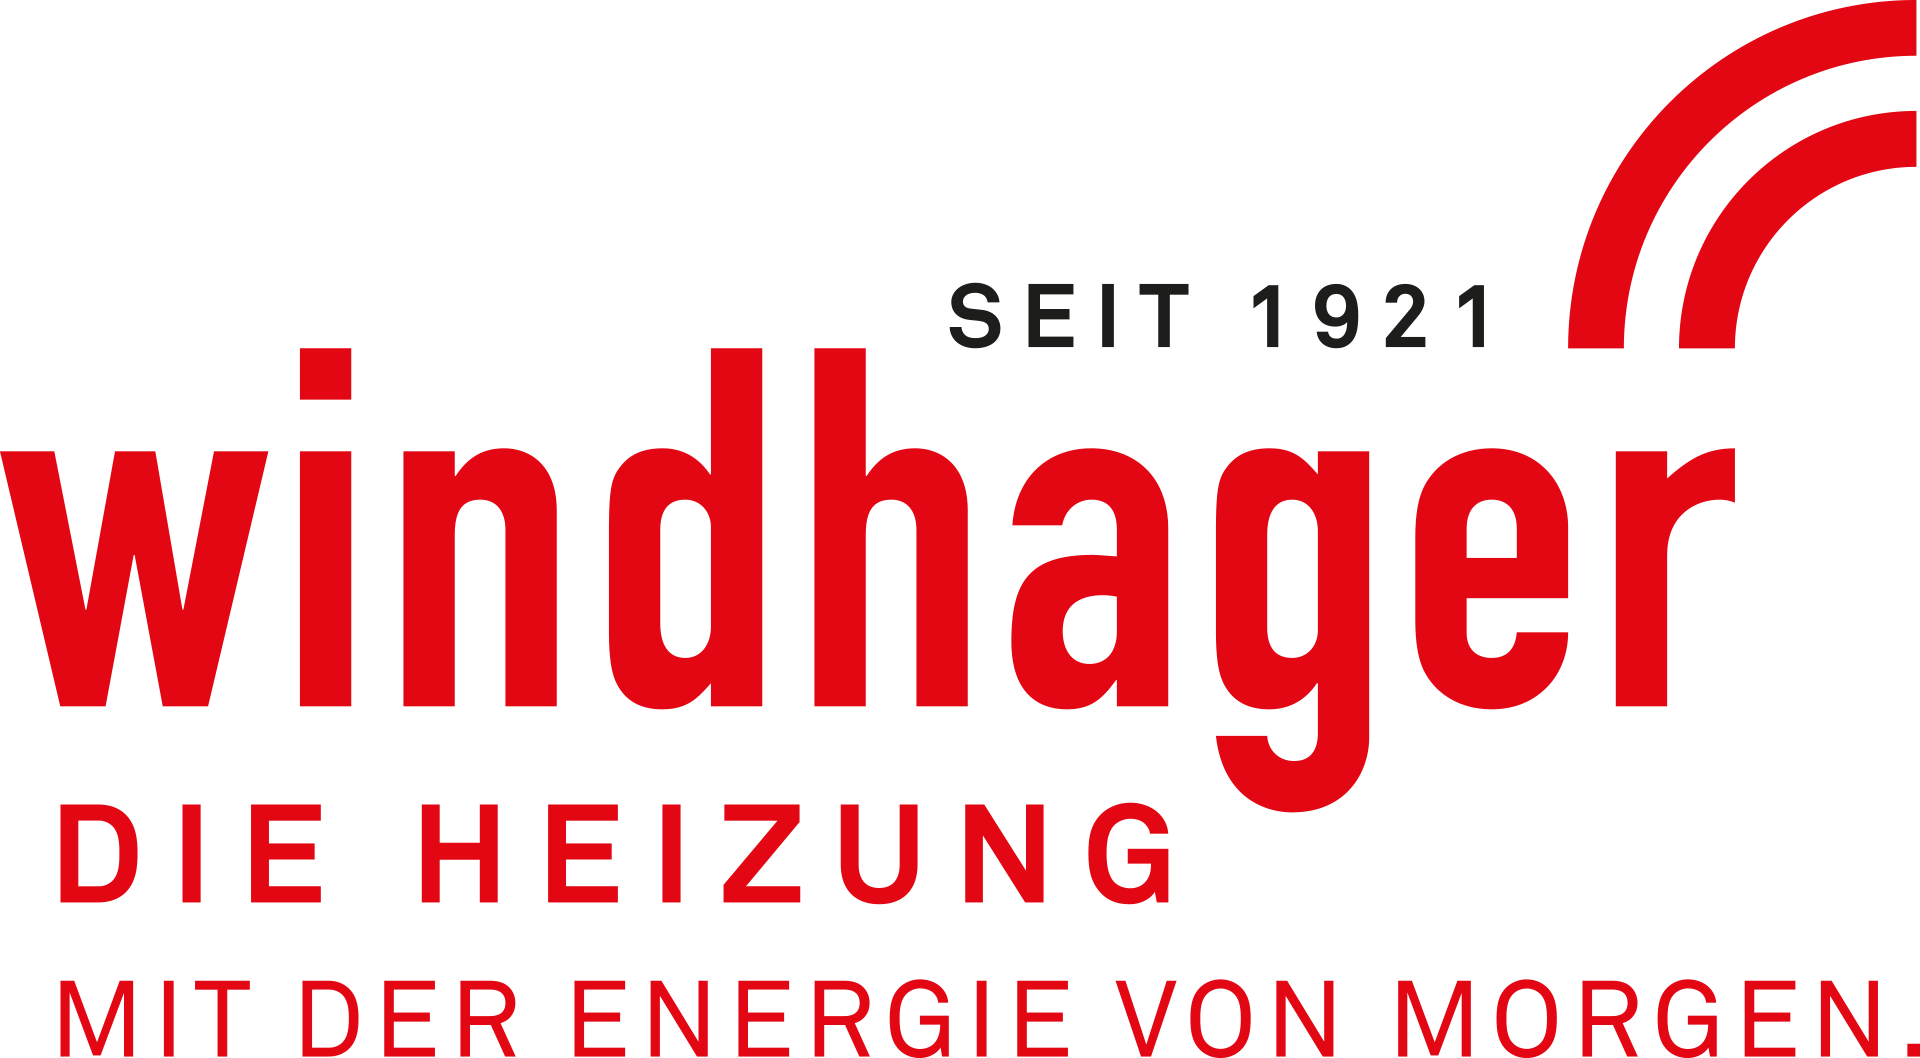 Logo von Windhager Zentralheizung GmbH